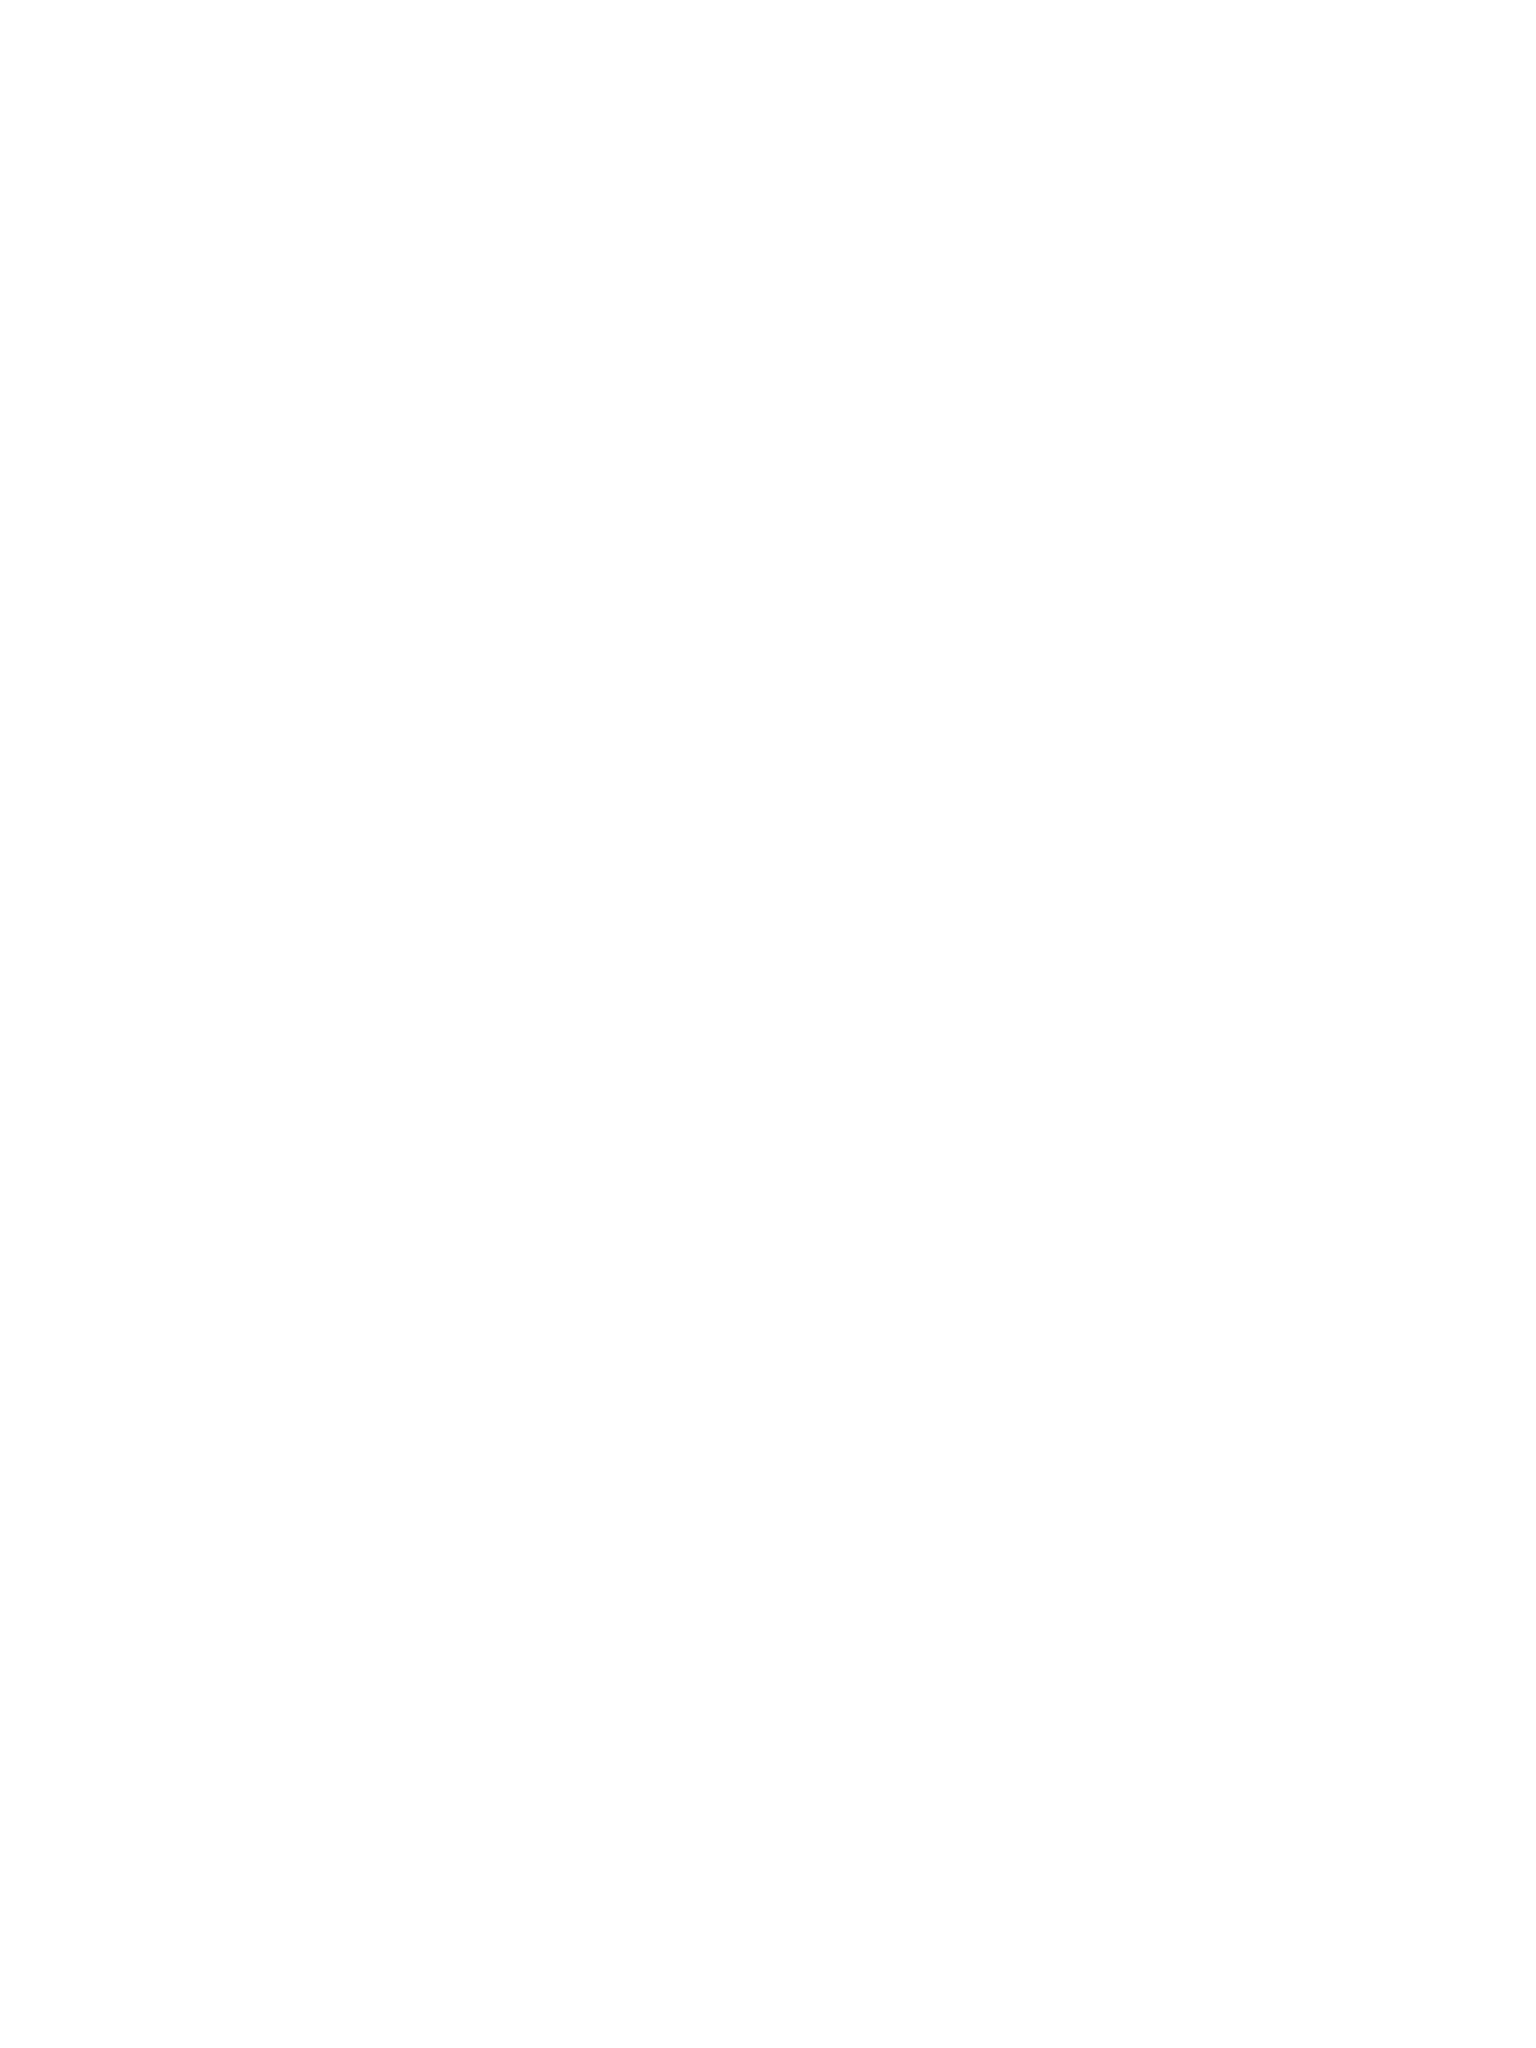 женщина в черном платье в горохек сидит на траве в парке, вид сверху. фотосессия на природе, портрет, фотопрогулка, фотограф Георгий Безбородов